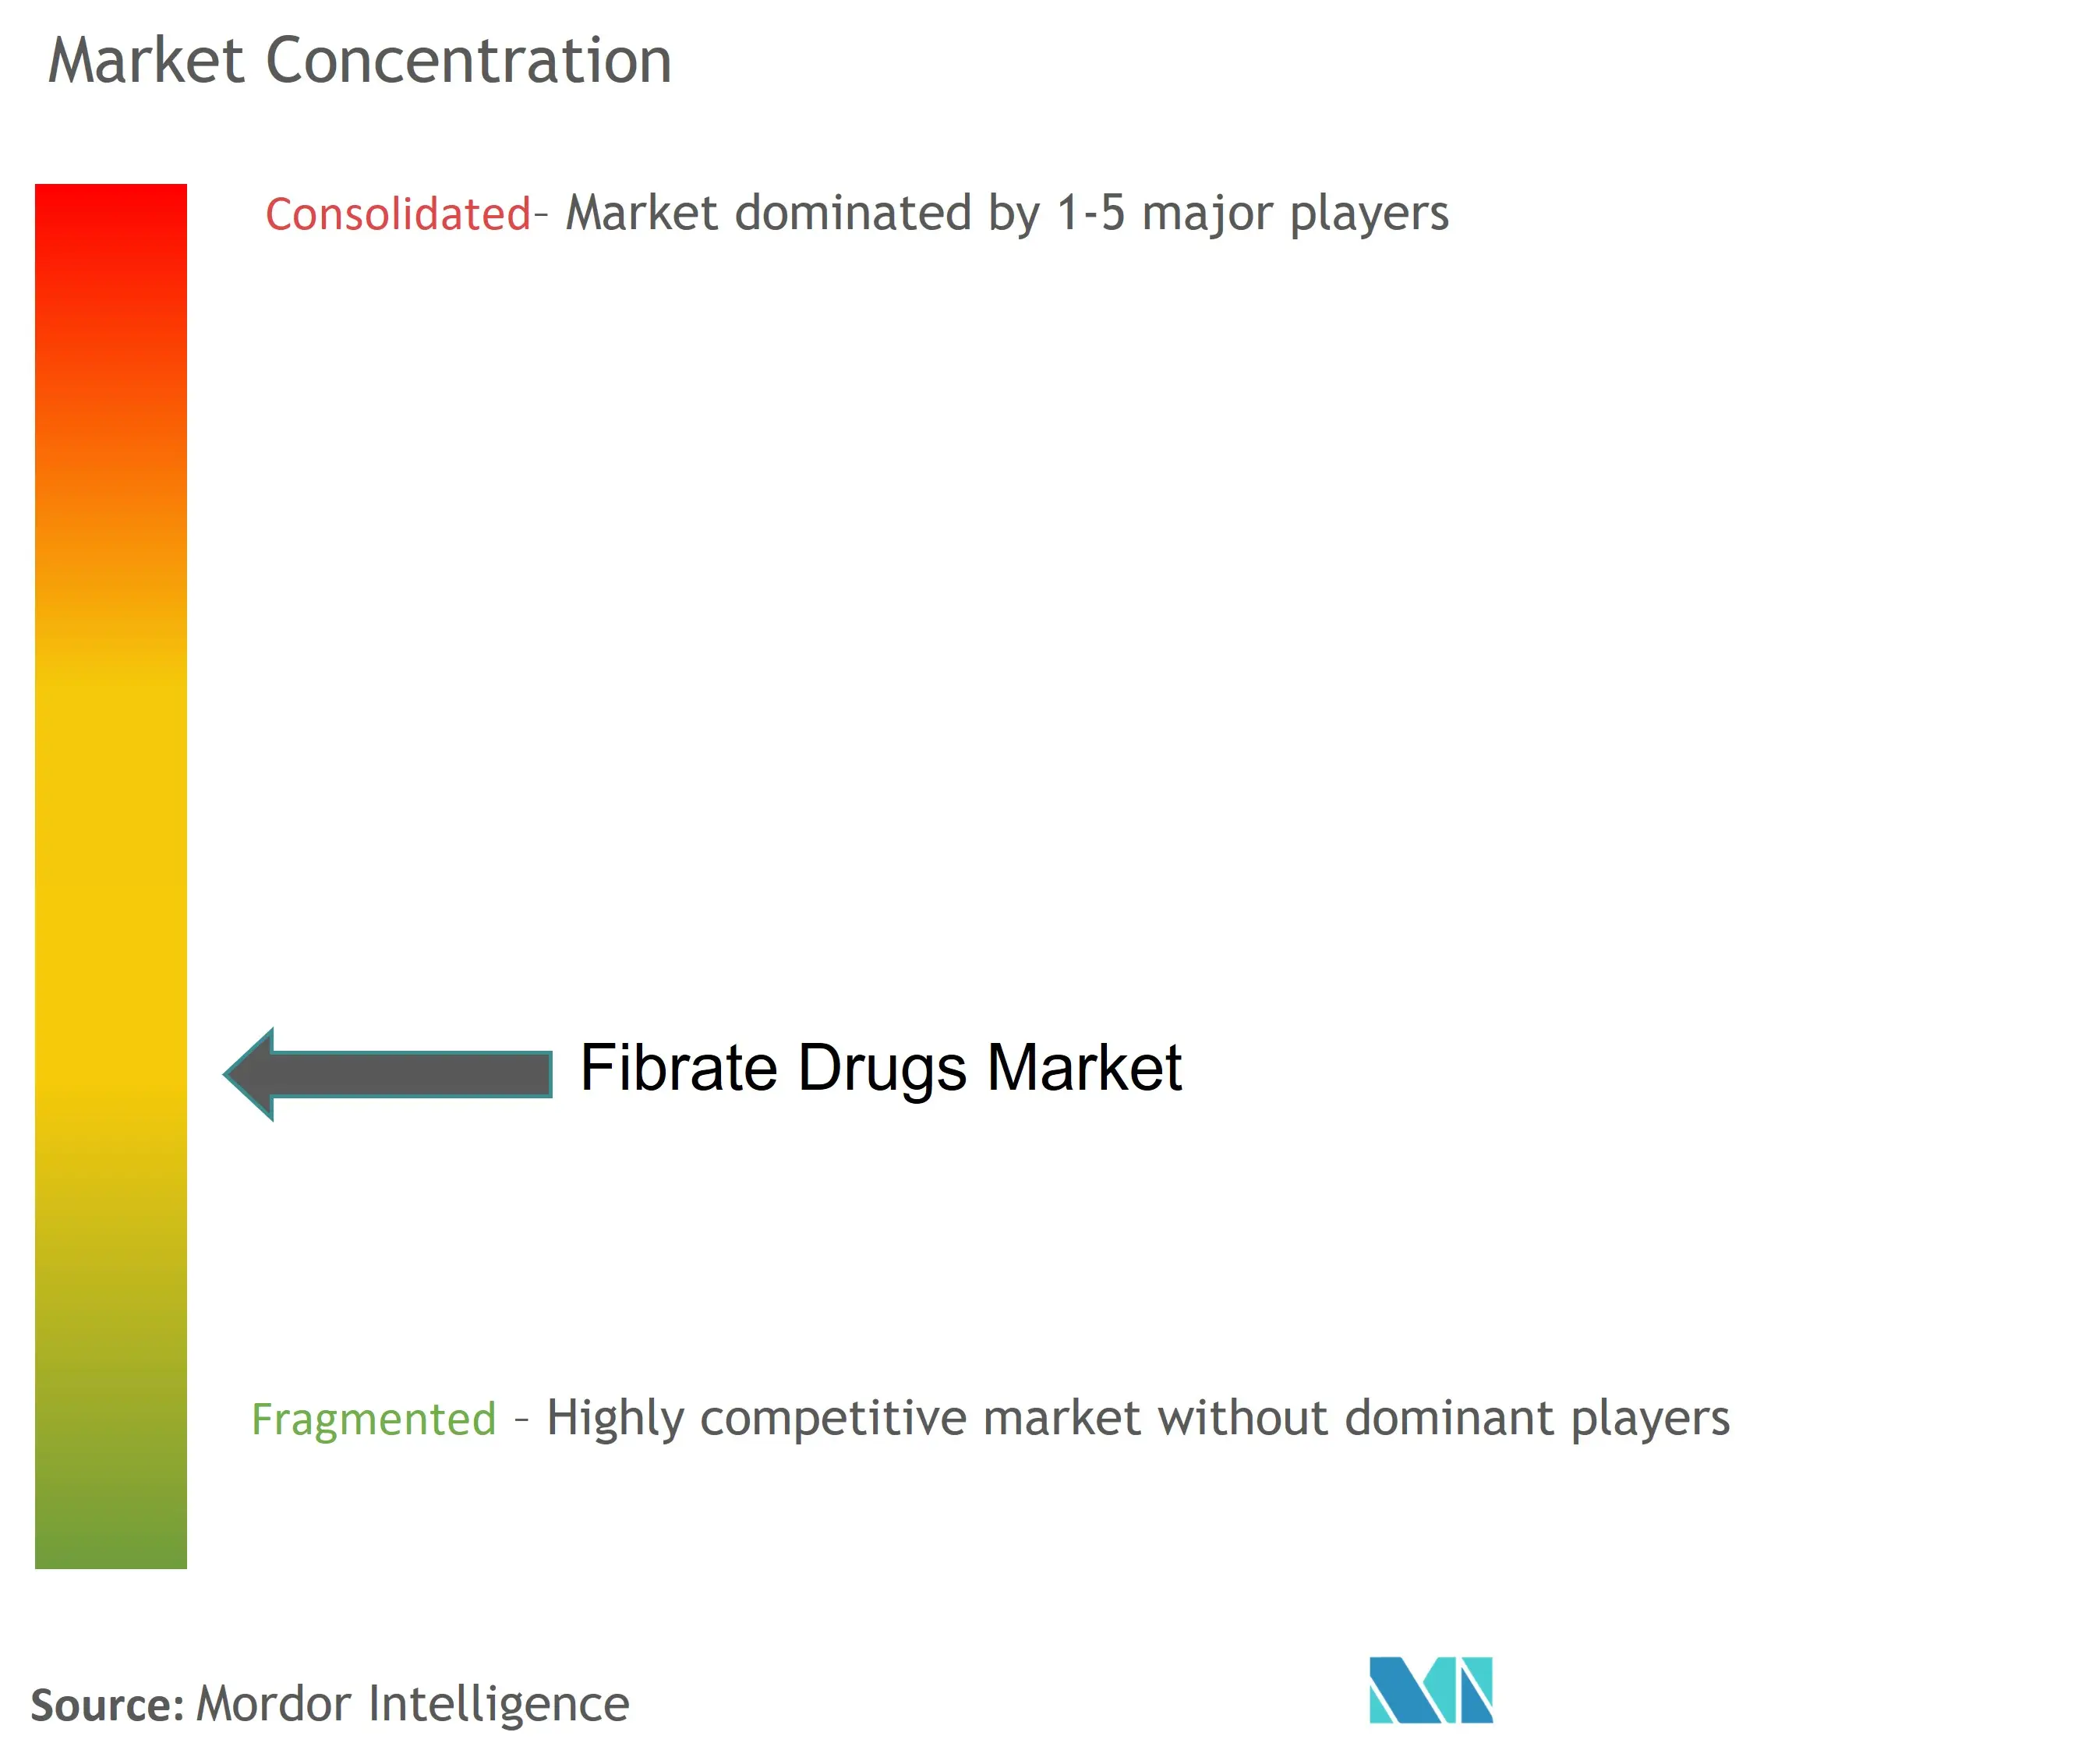 Fibrate Drugs Market Concentration